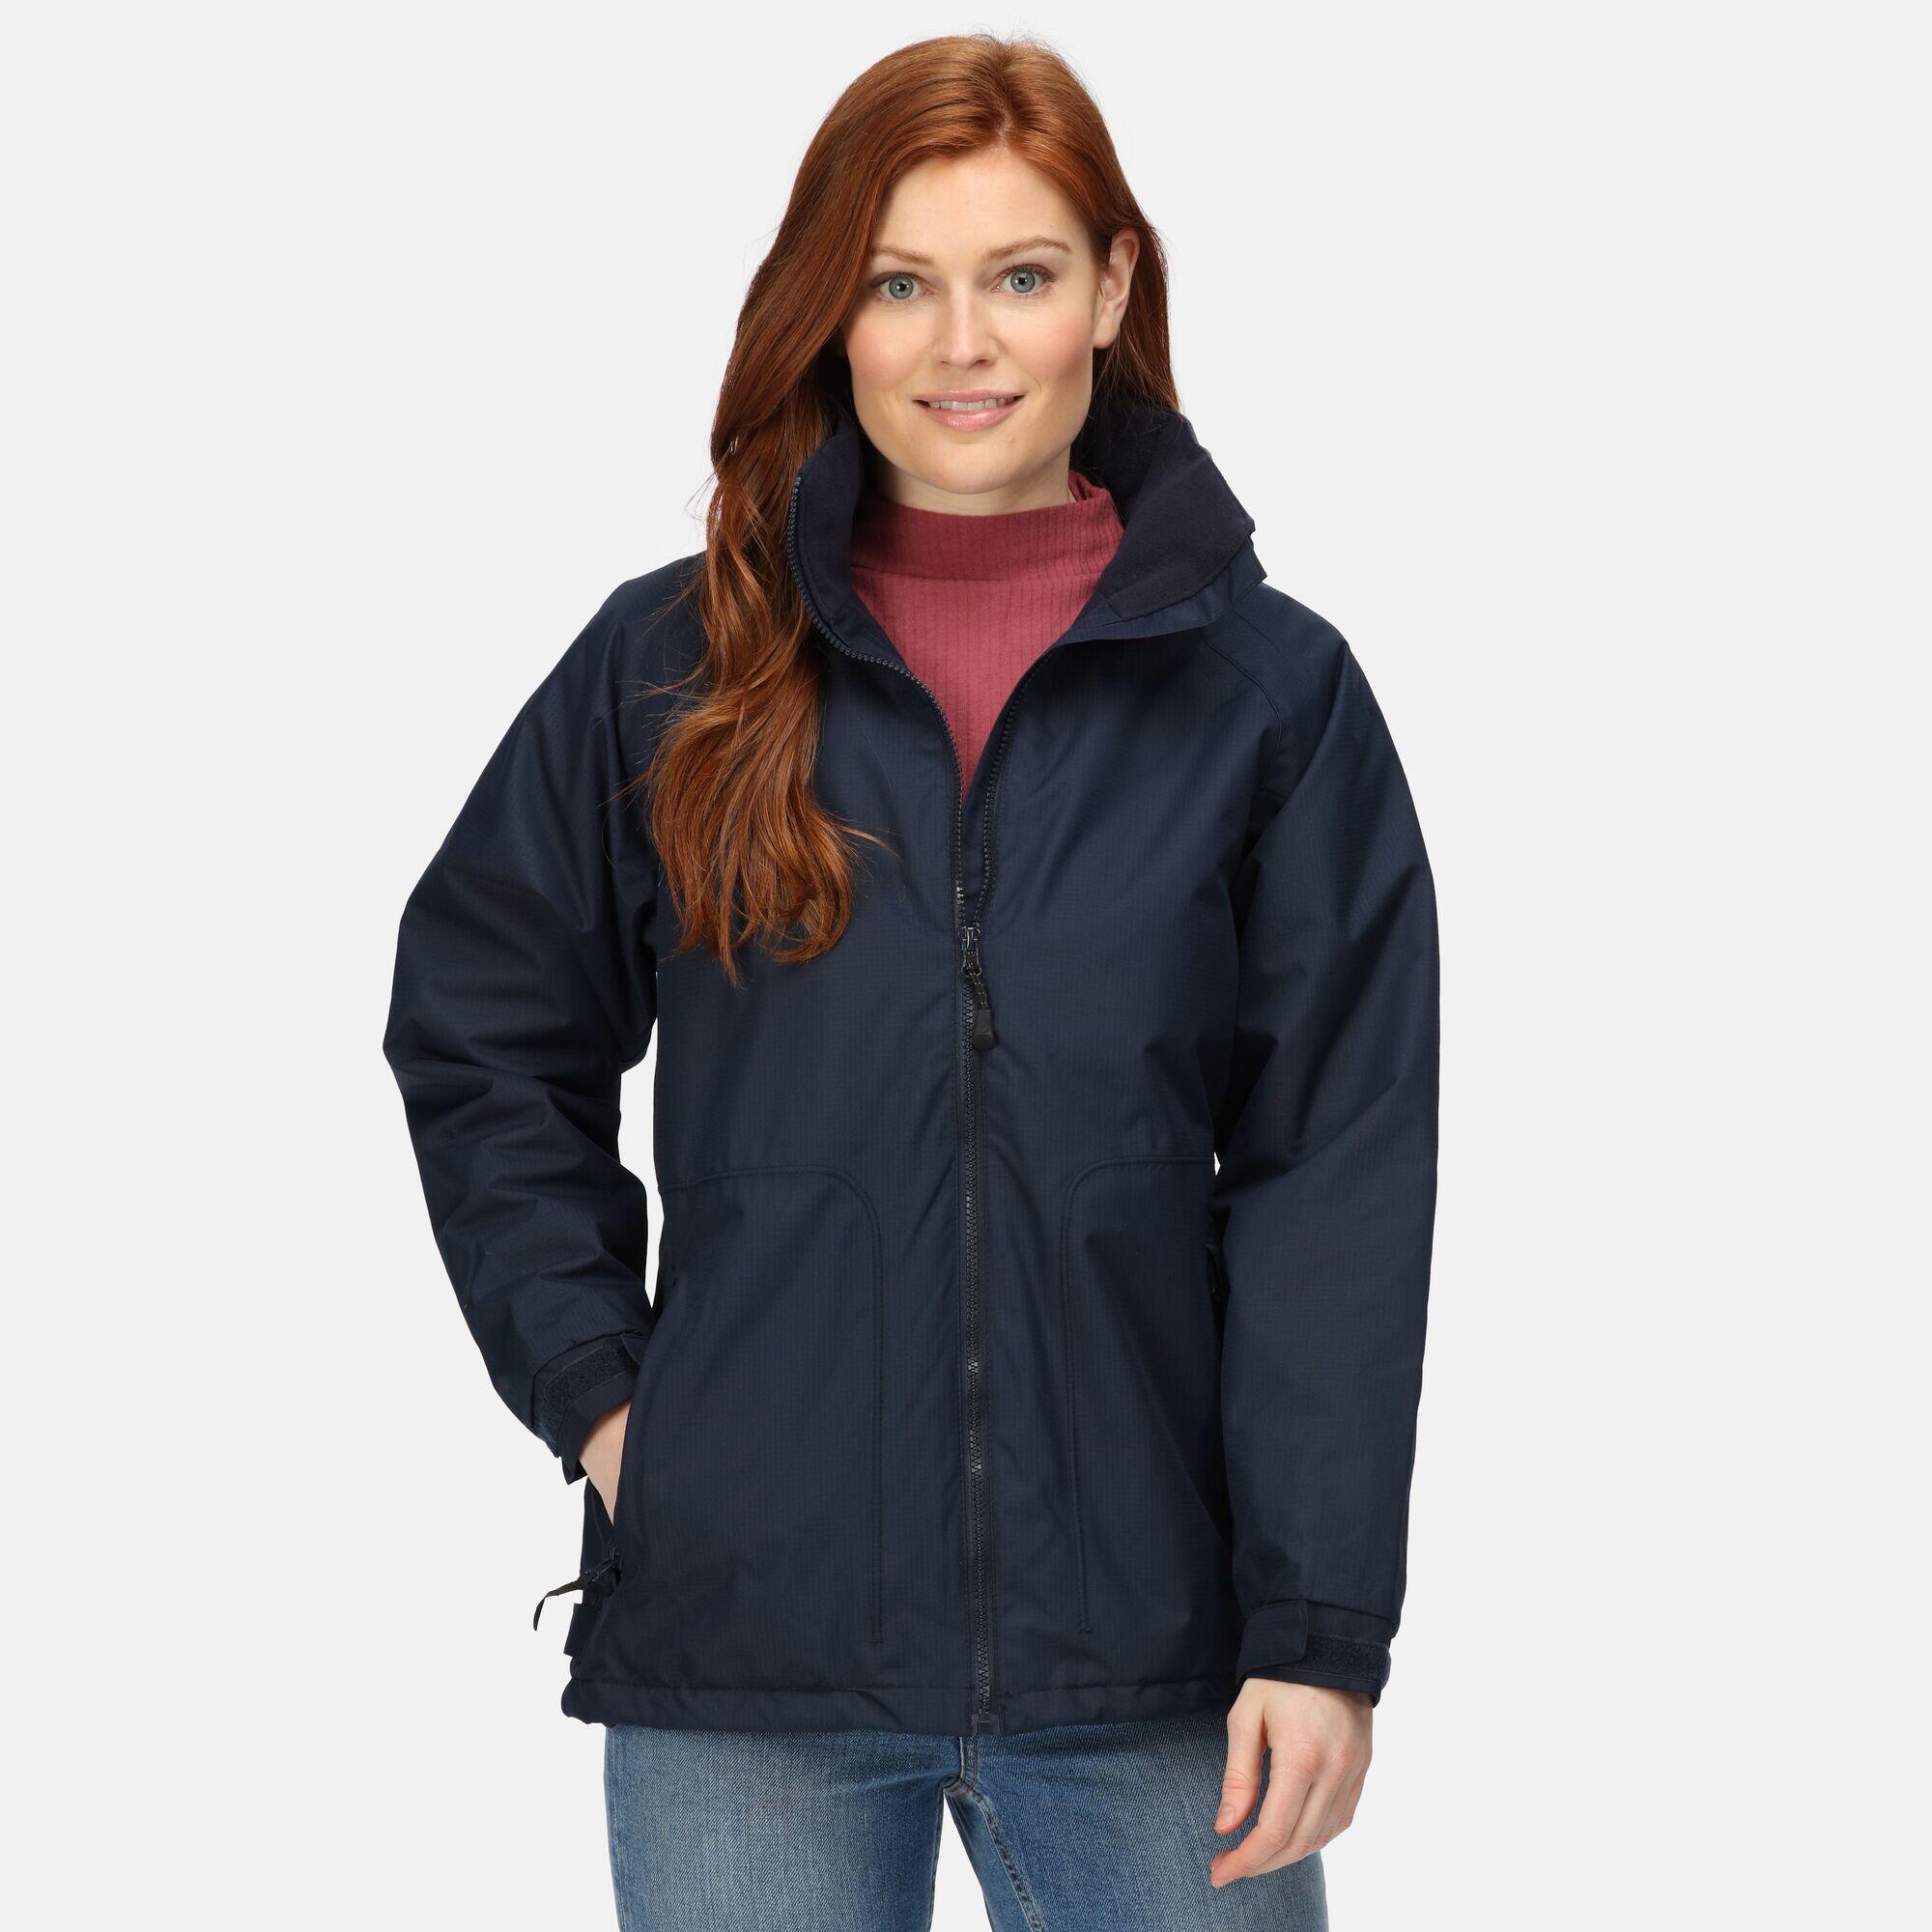 Womens/Ladies Waterproof Windproof Jacket (Fleece Lined) (Navy) 4/5